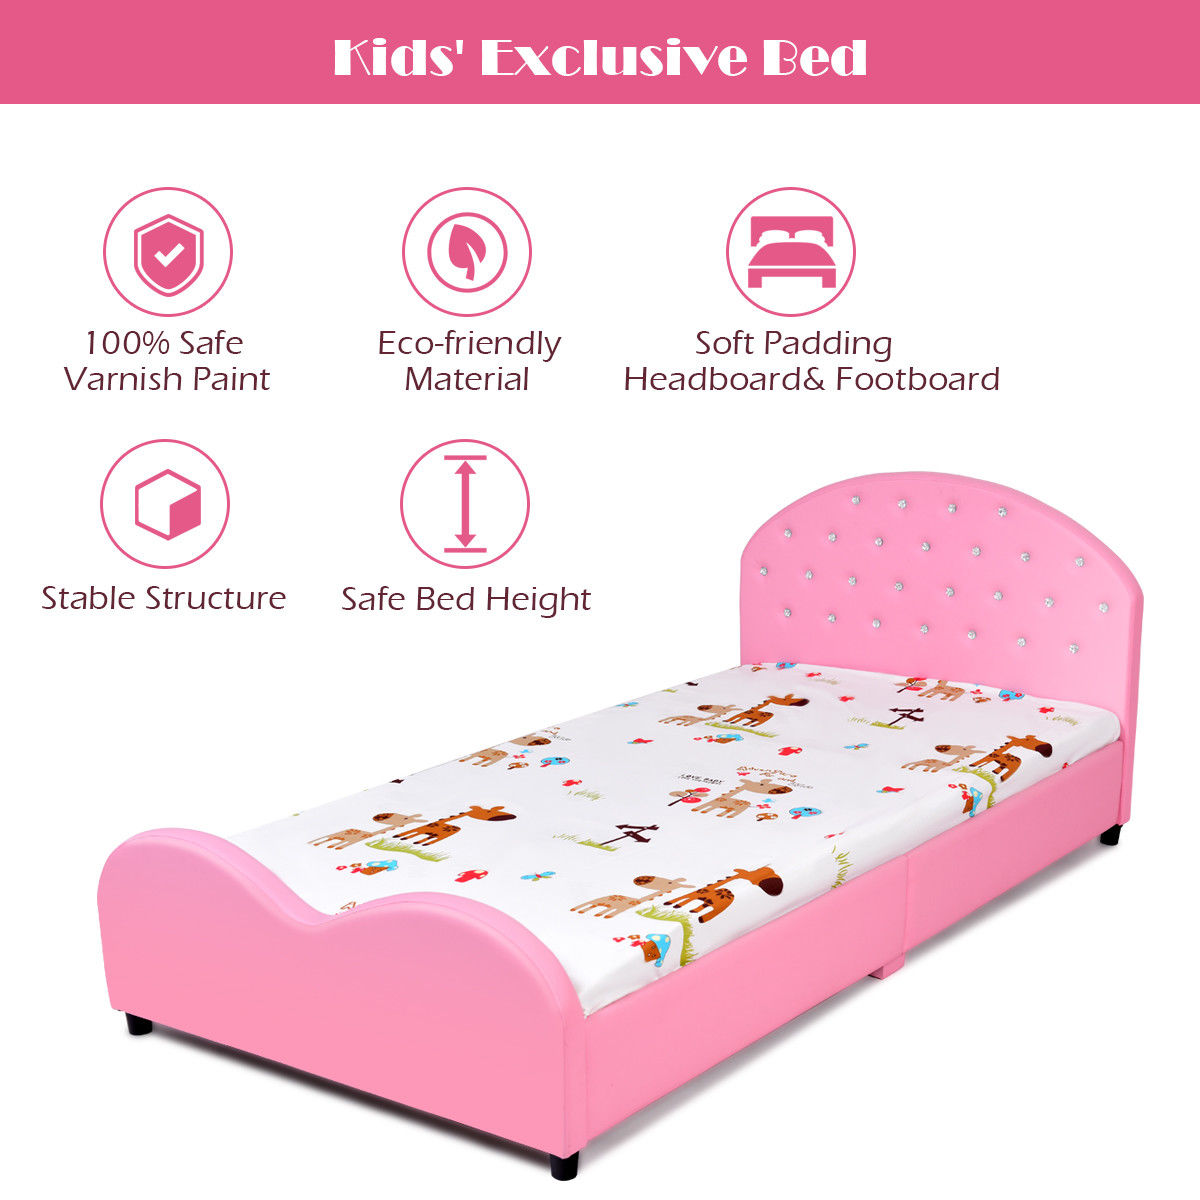 Costway Kids Children PU Upholstered Platform Wooden Princess Bed Bedroom Furniture Pink - image 3 of 9